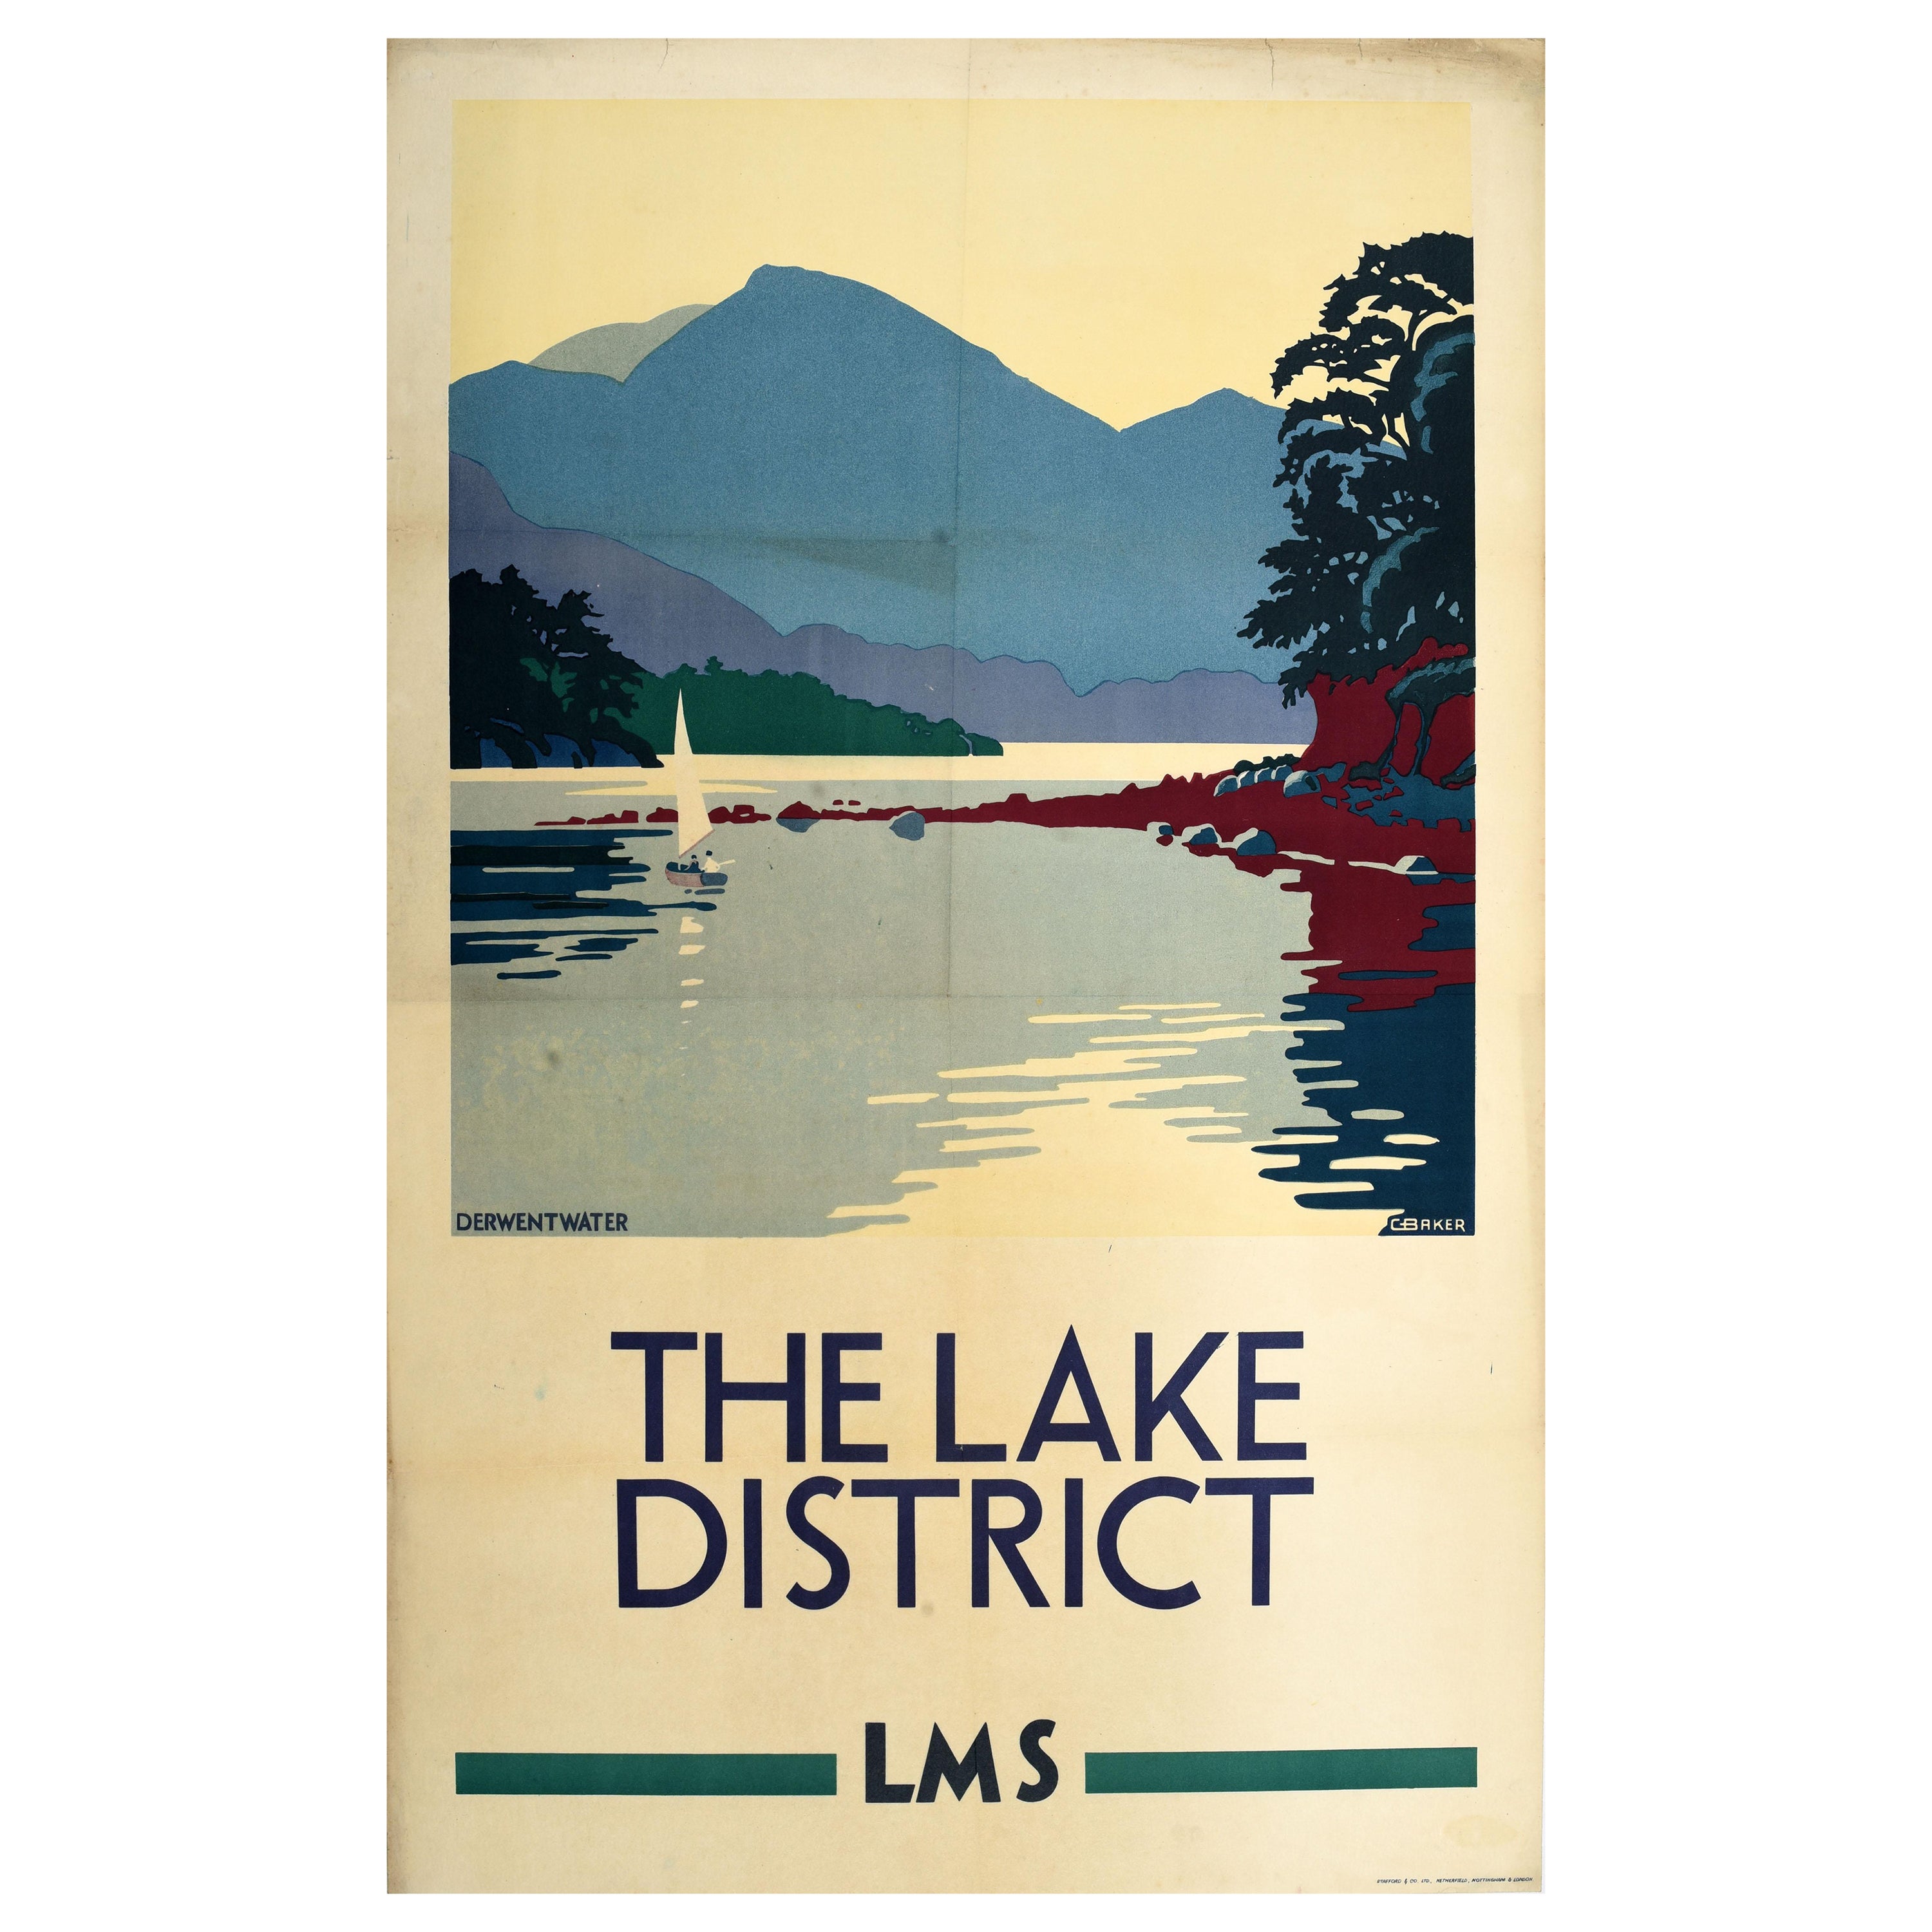 Original-Vintage-Poster, LMS Railway, Lake District, Derwentwater, Cumbria, England